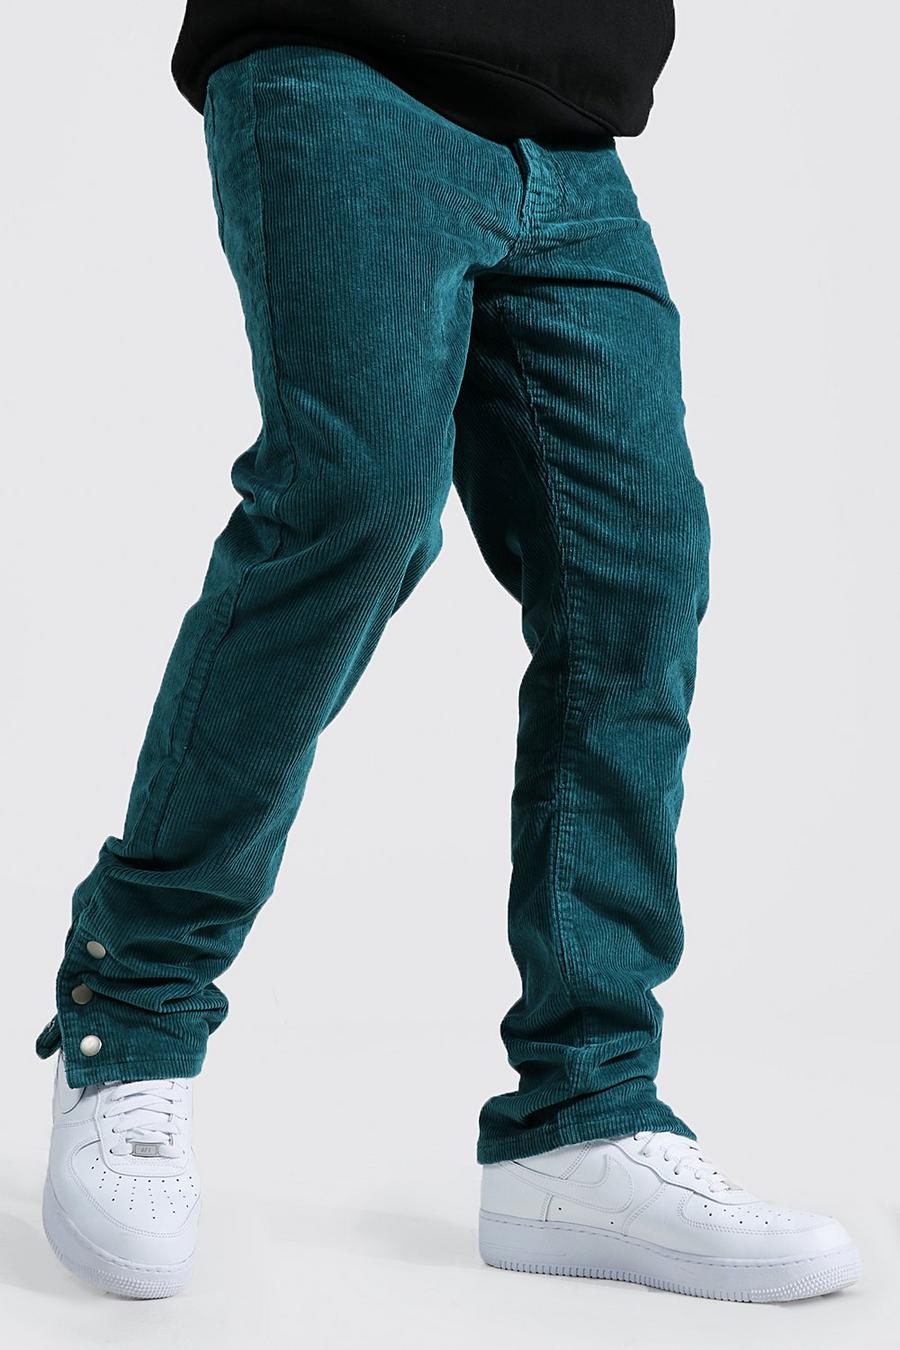 Pantalón de pernera recta elásticos con cordones y botones de presión en el bajo, Teal green image number 1